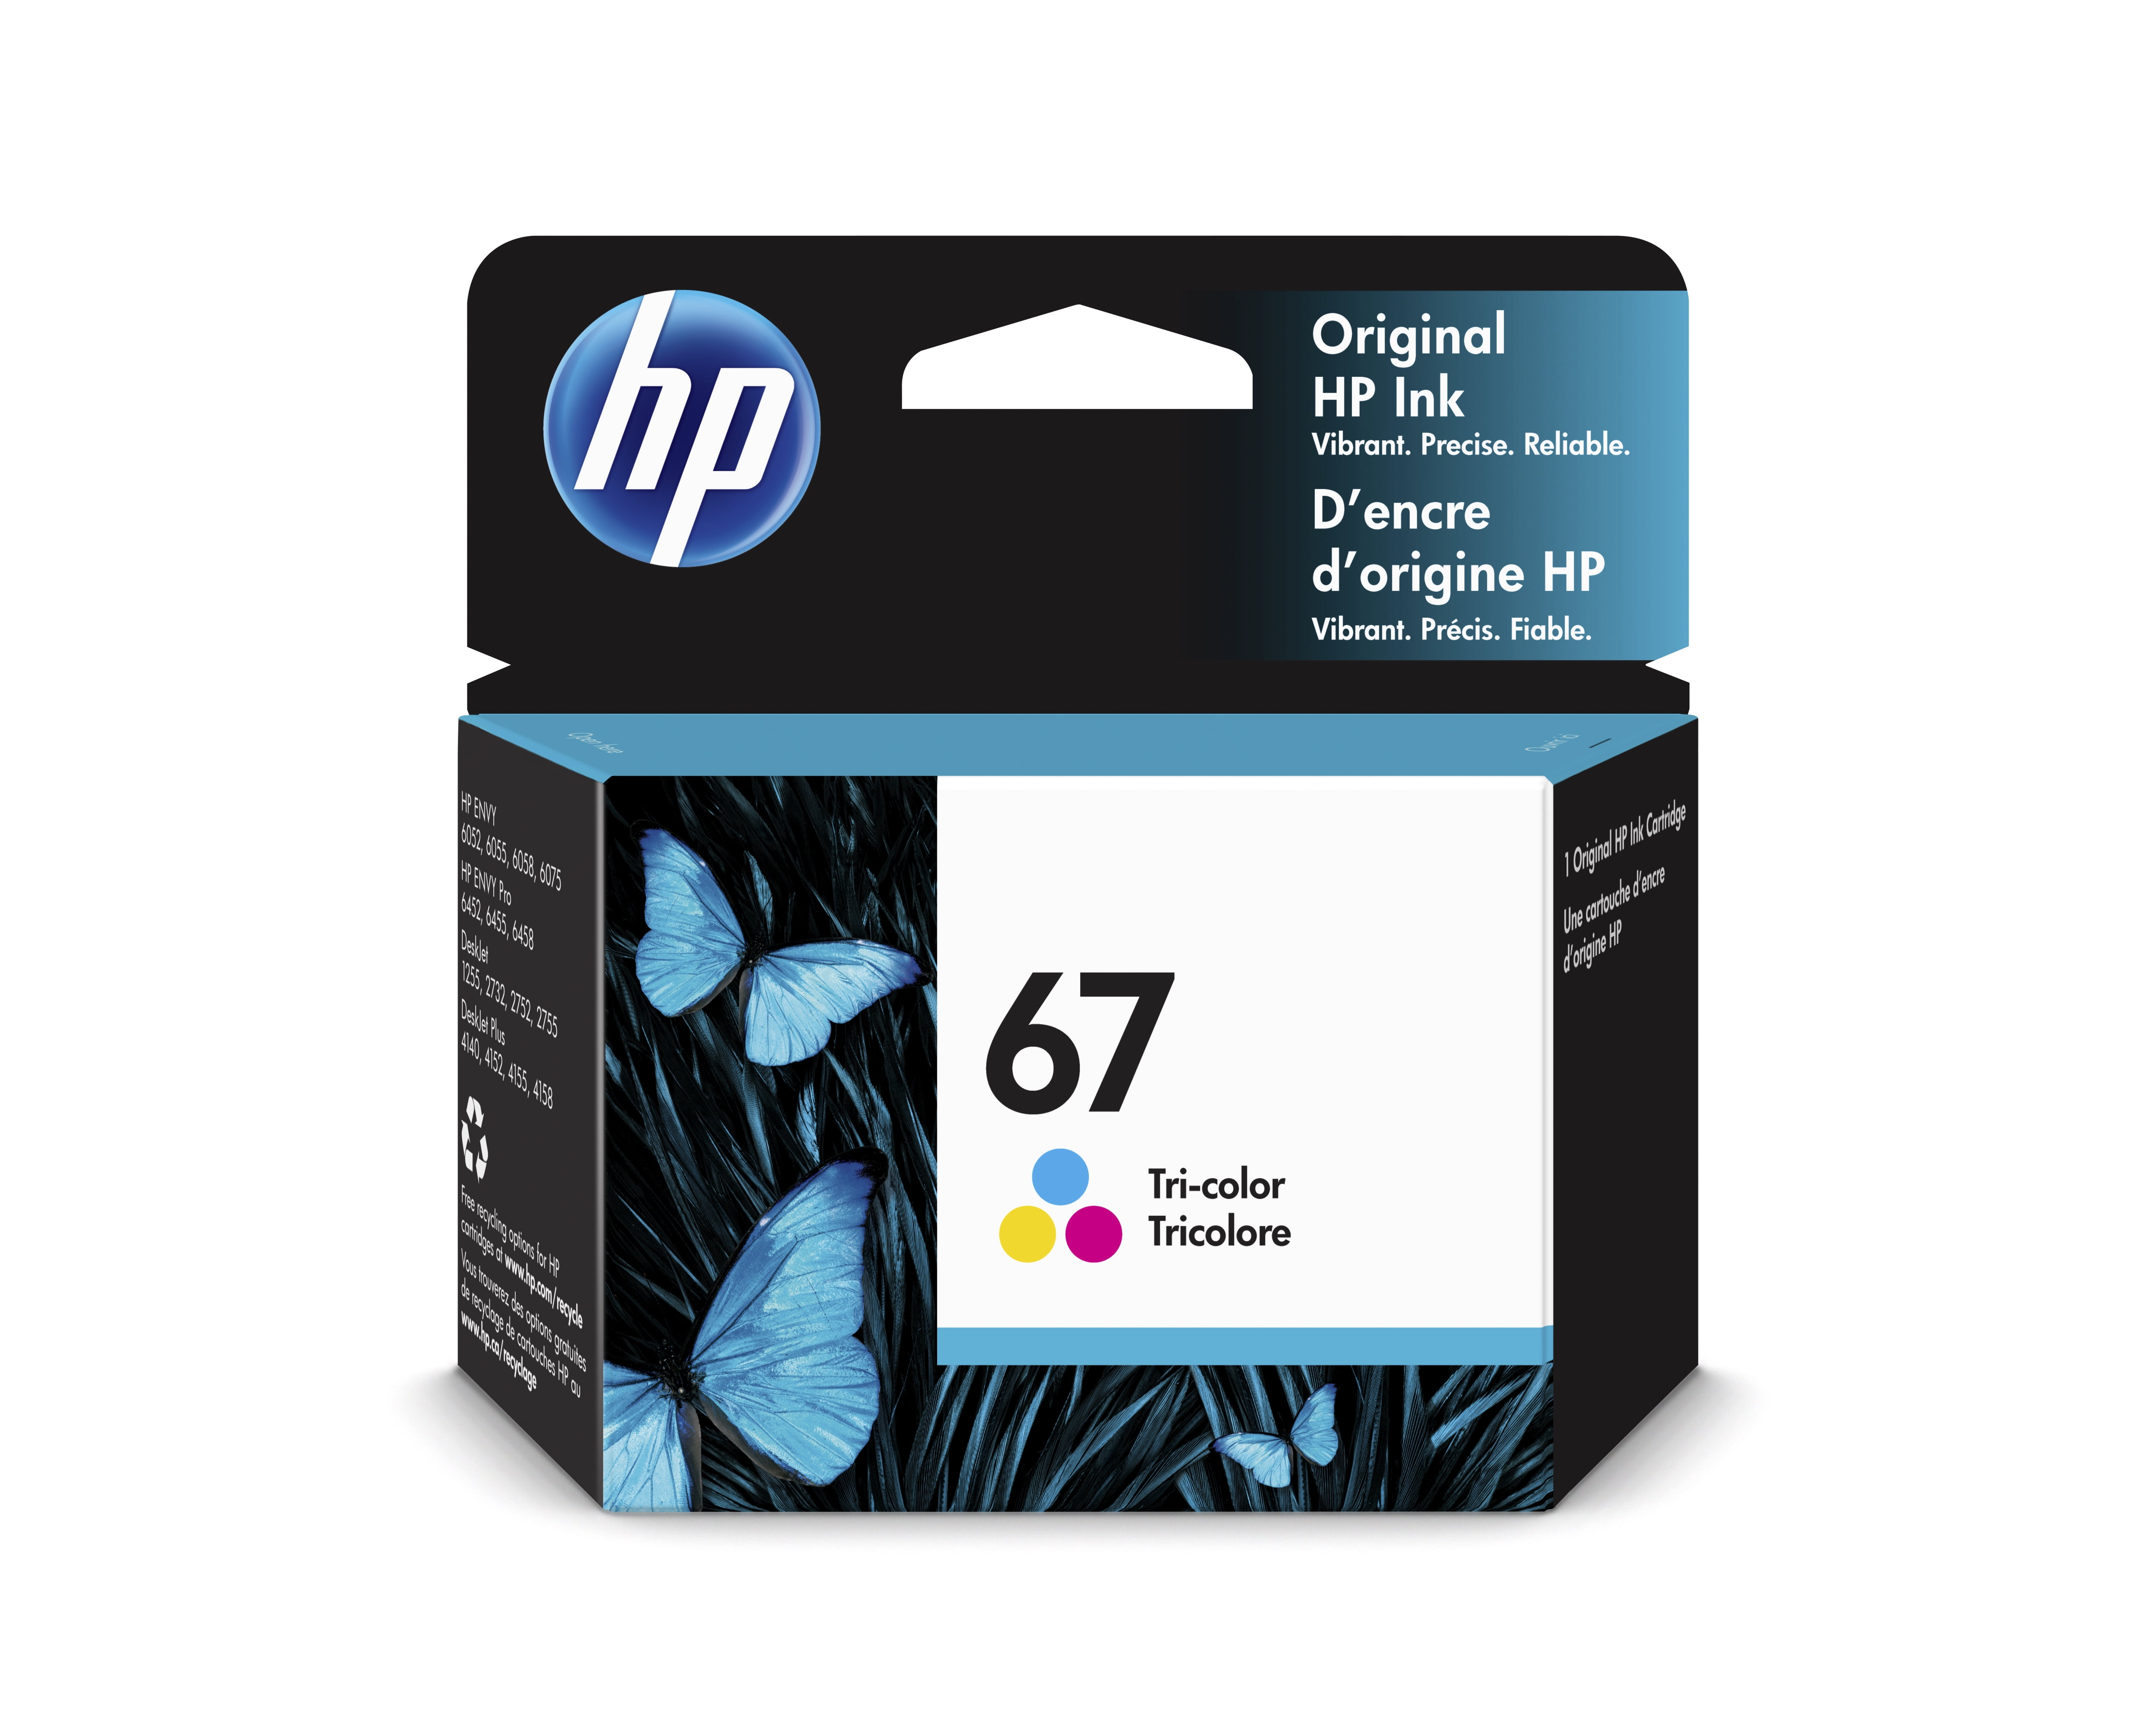 HP 3YP29AN Lot de 2 cartouches d'encre originales compatibles avec HP  DeskJet 1255, 2700, 4100 Series, HP Envy 6000, 6400 Series